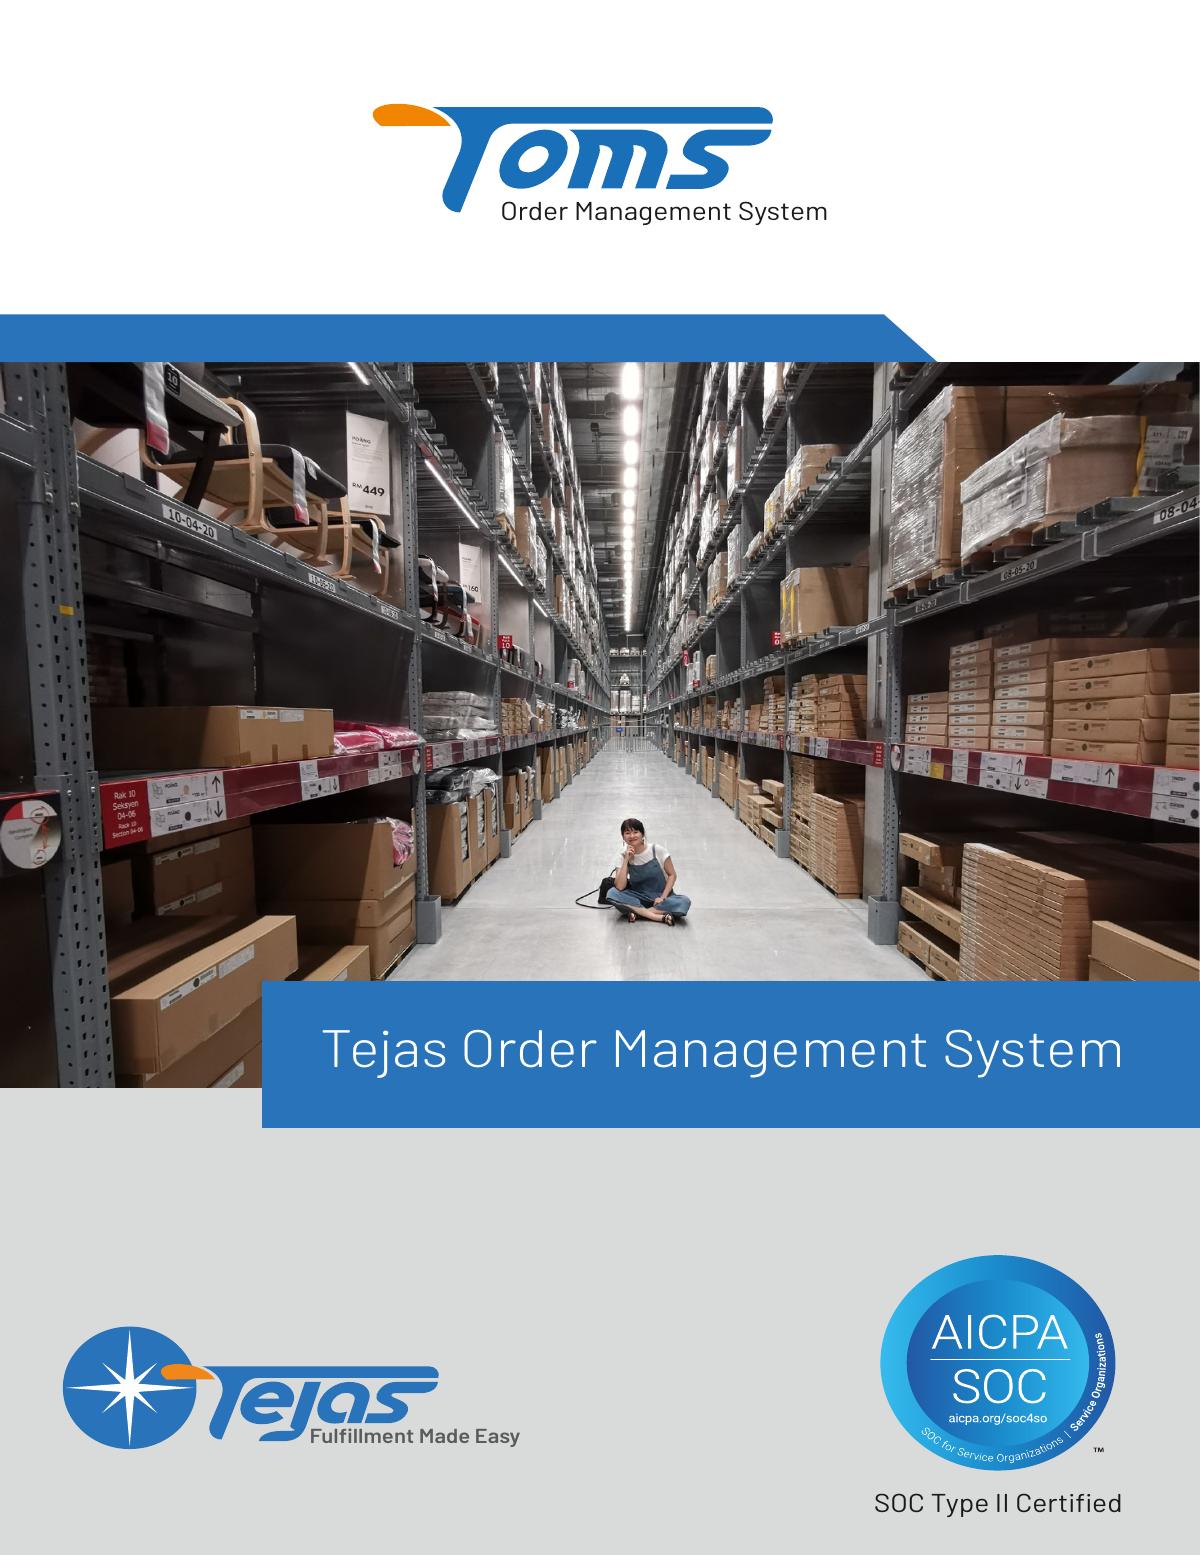 Benefits of Tejas Order Management System